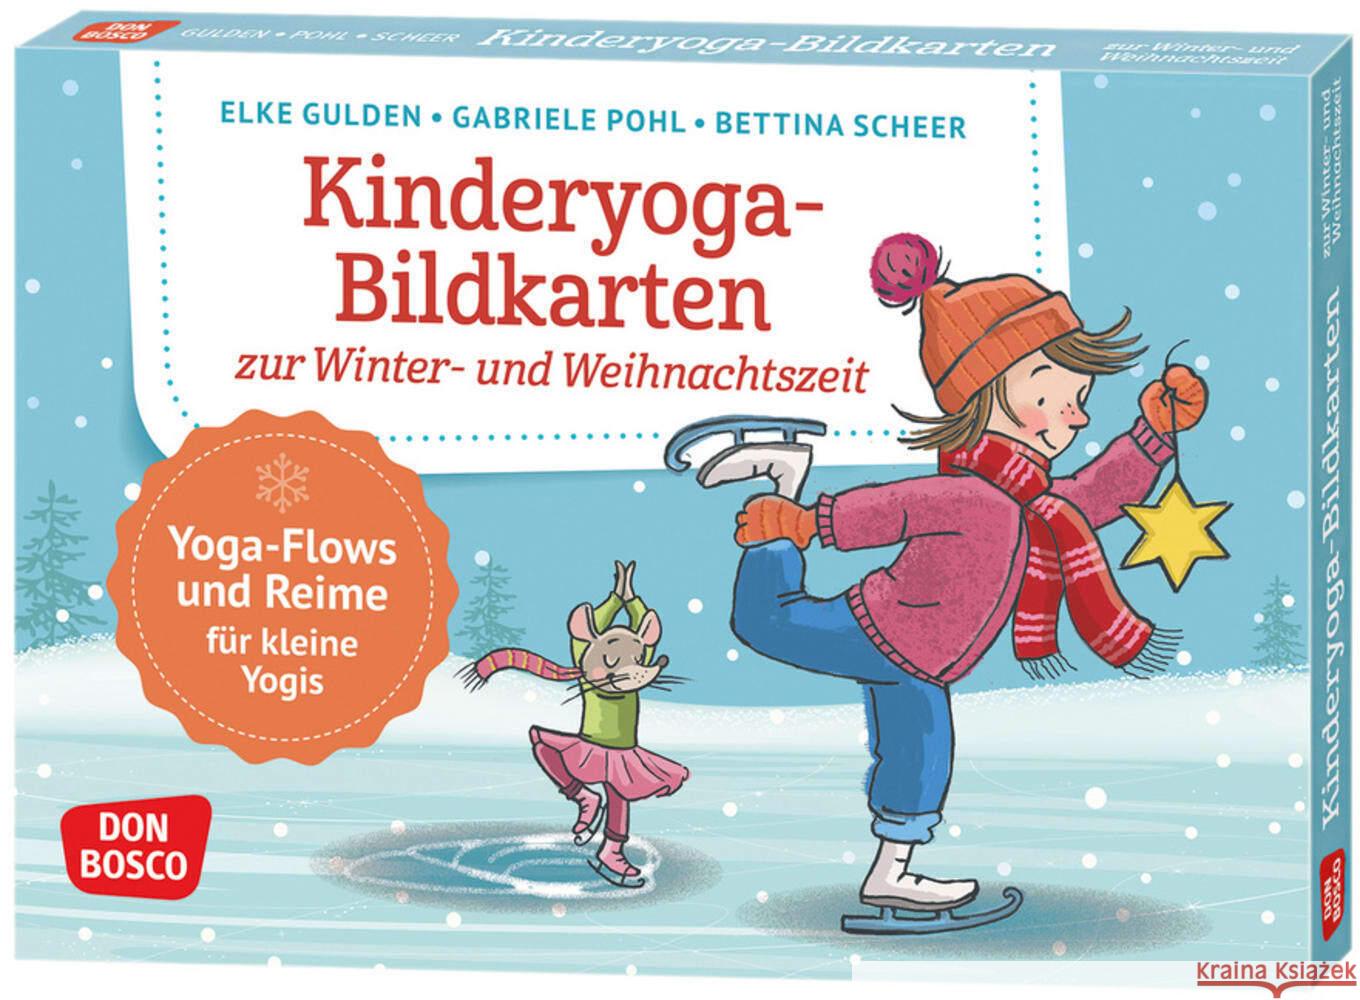 Kinderyoga-Bildkarten zur Winter- und Weihnachtszeit Gulden, Elke, Pohl, Gabriele, Scheer, Bettina 4260179516580